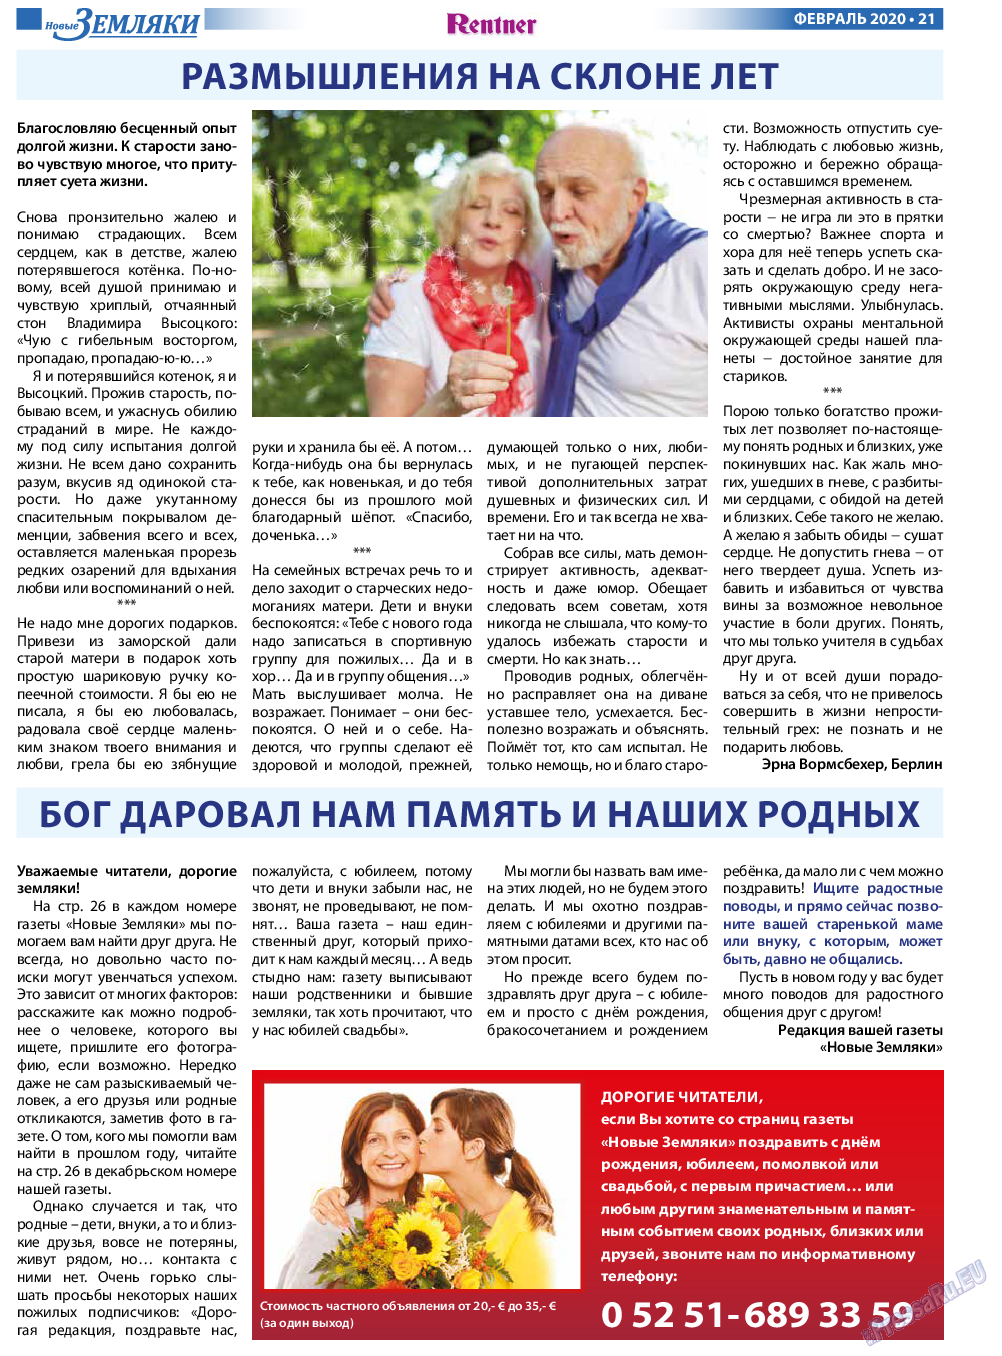 Новые Земляки, газета. 2020 №2 стр.21